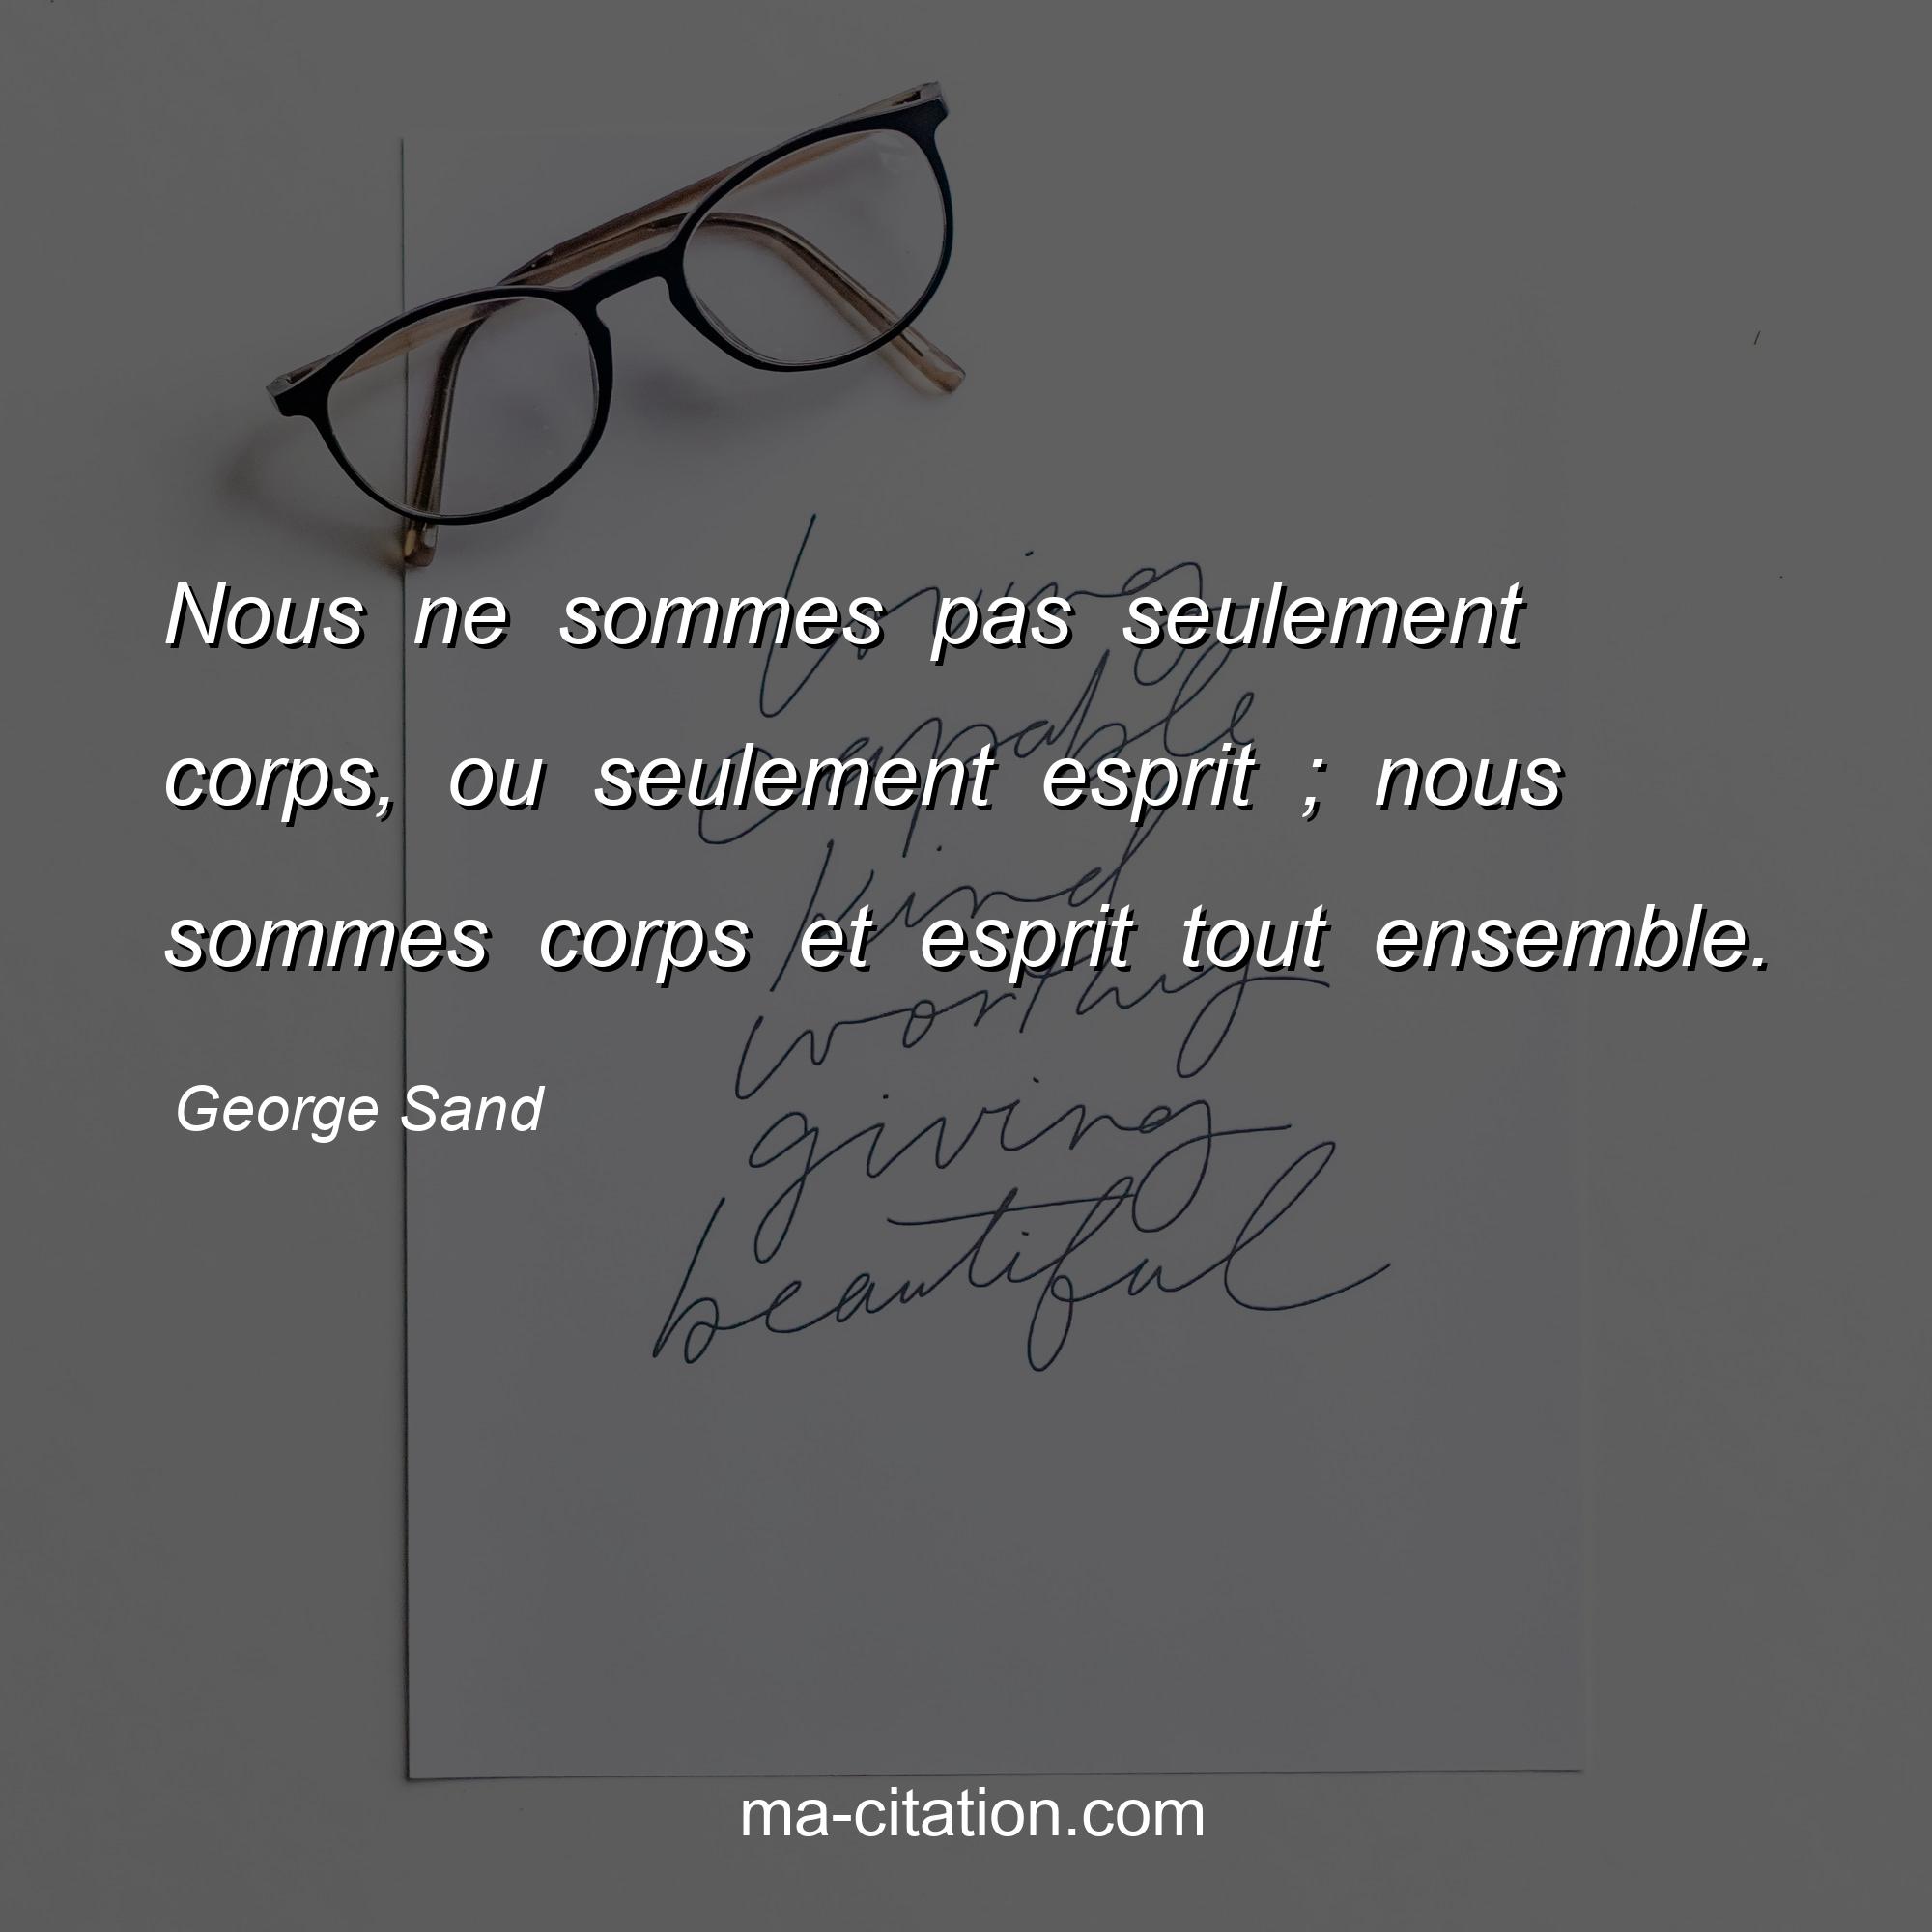 George Sand : Nous ne sommes pas seulement corps, ou seulement esprit ; nous sommes corps et esprit tout ensemble.